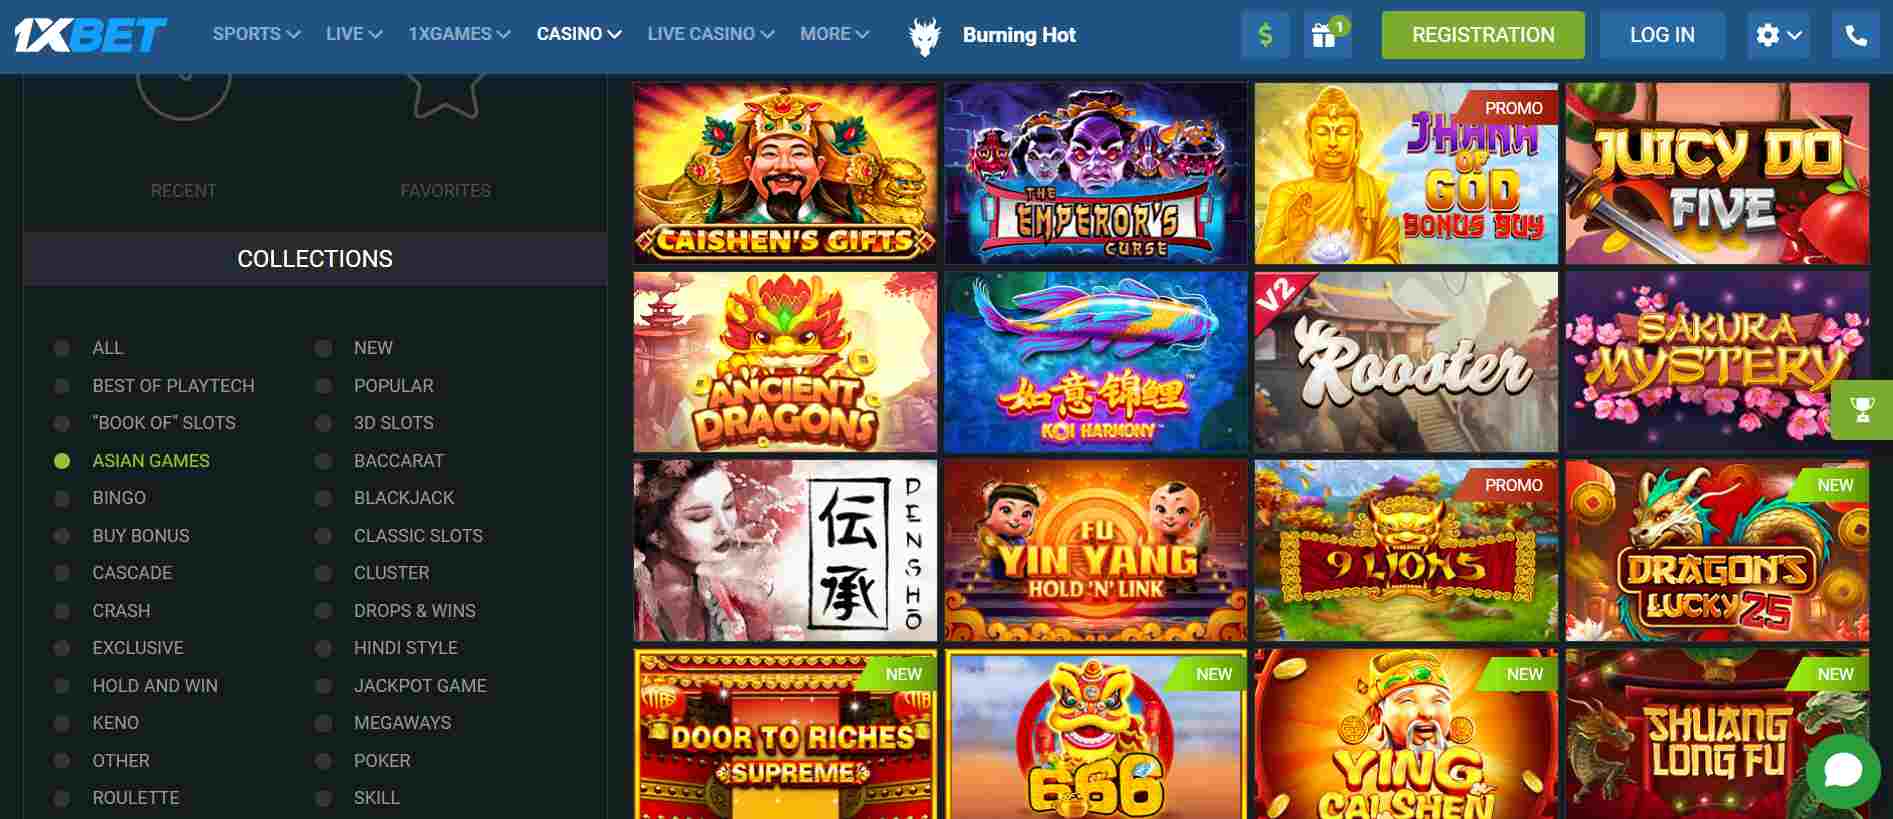 Casino games 1xbet Taiwan